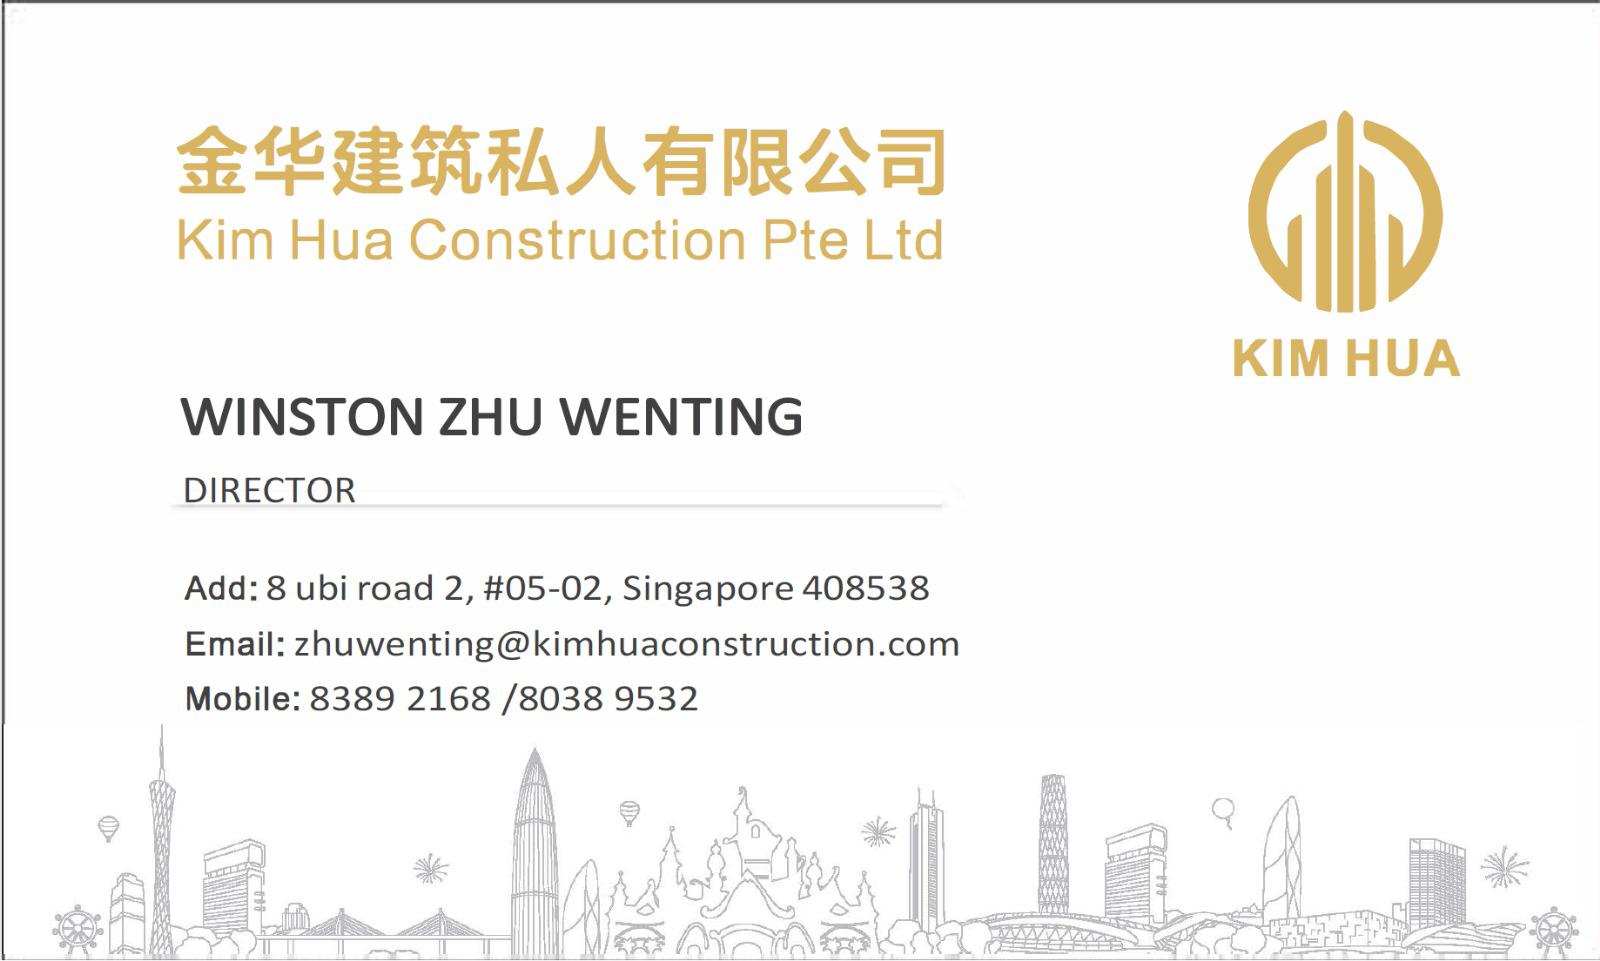 Kim Hua Construction Pte. Ltd. company logo